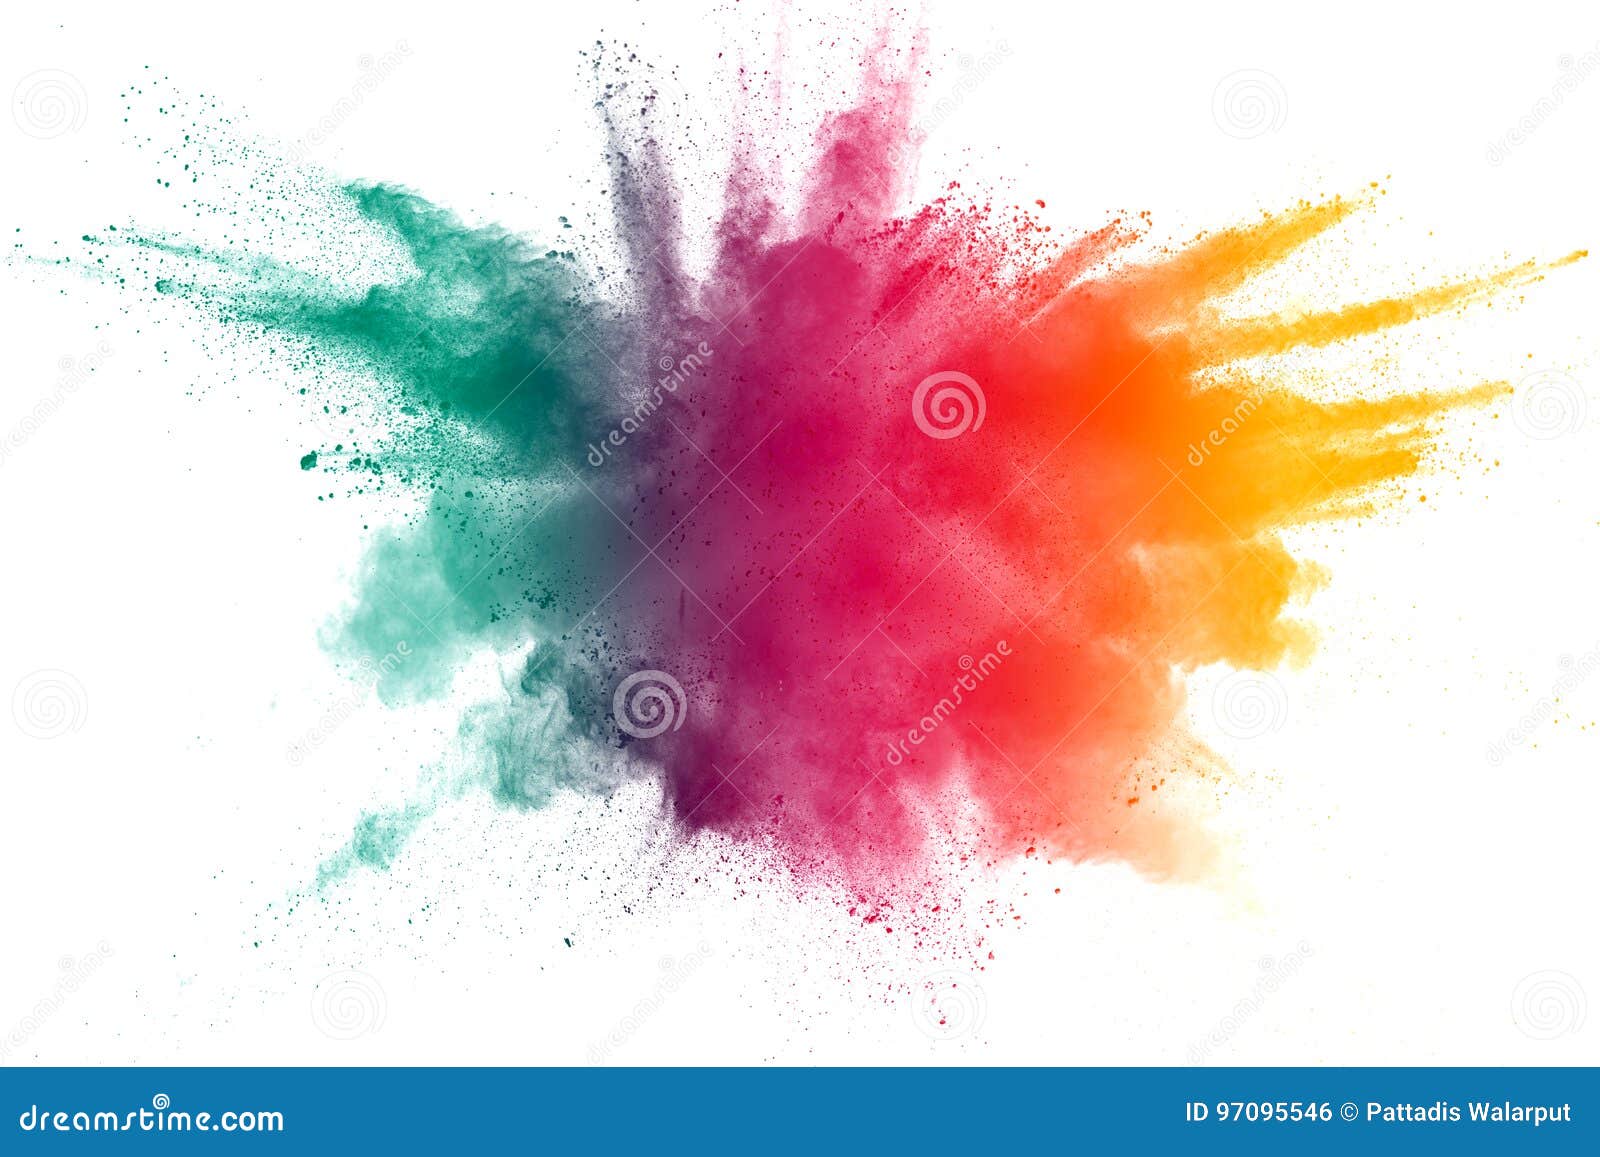 color powder explosion